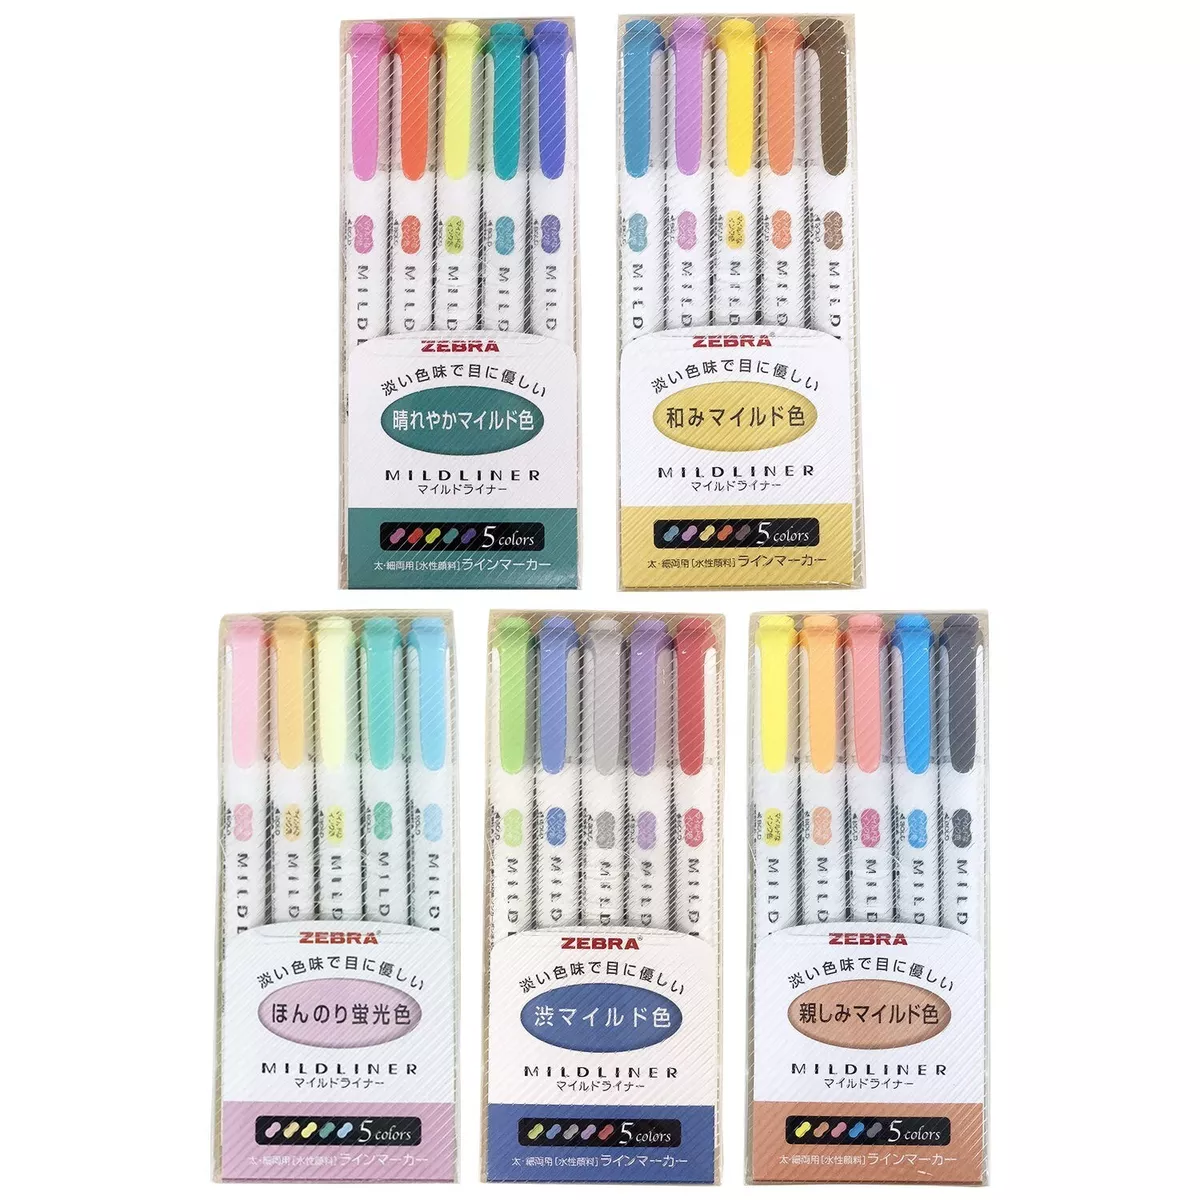 Zebra Mildliner highlighter pen set, 25 Pastel Color set (Count